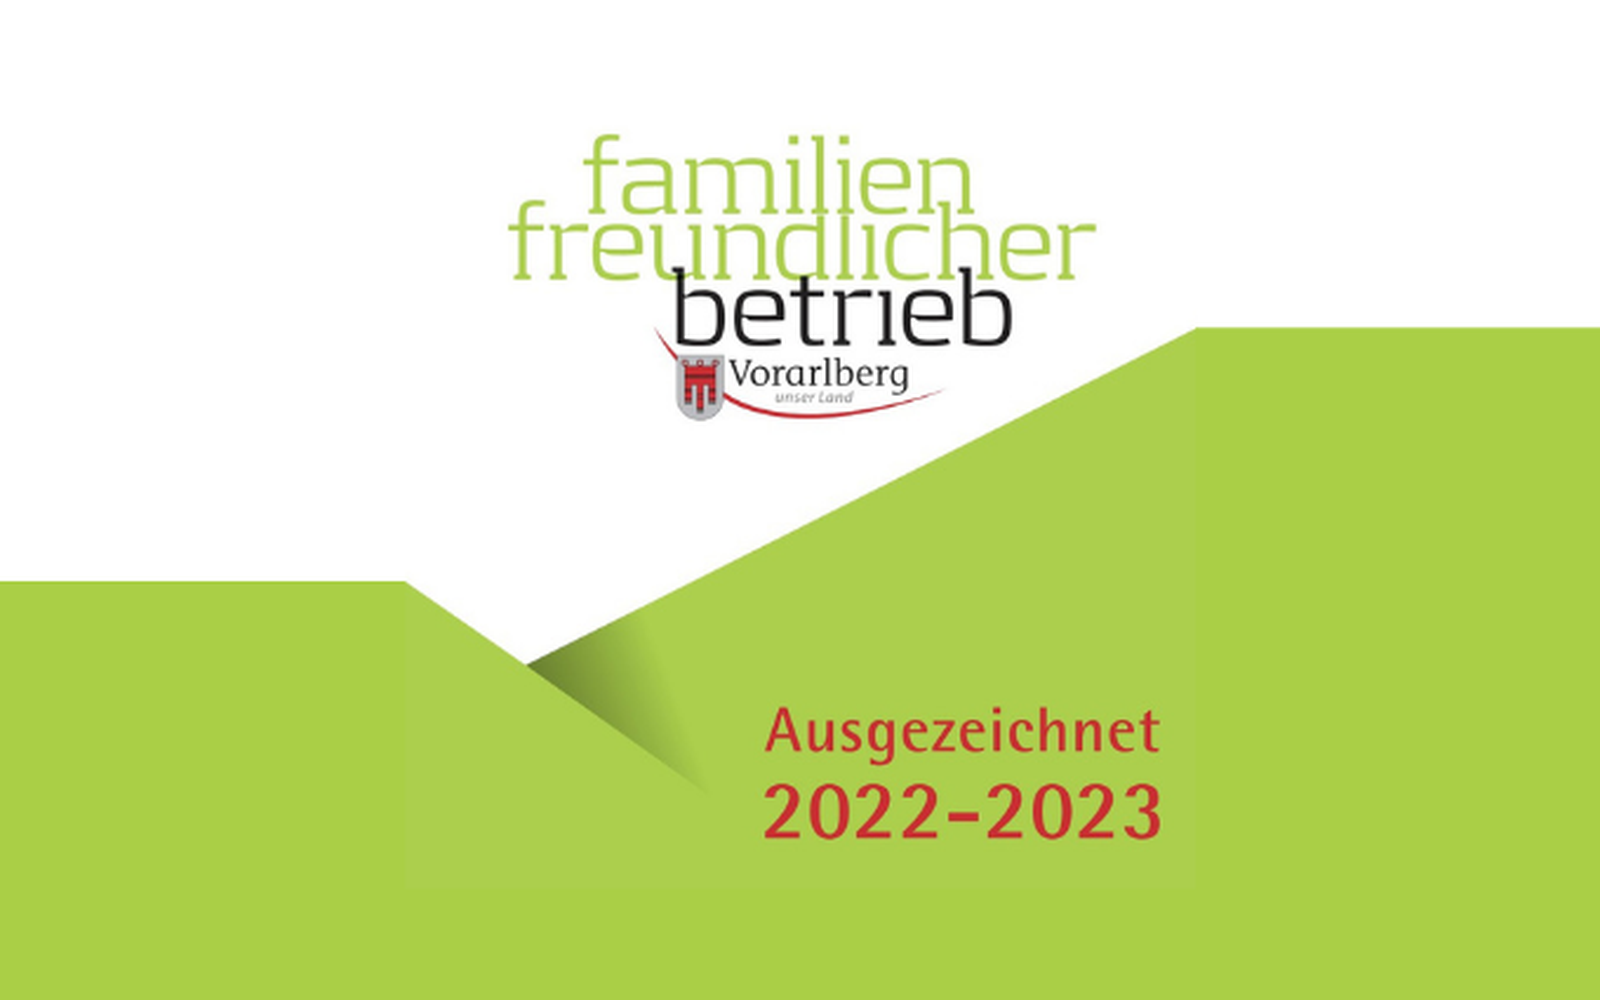 Auszeichnung Familienfreundlicher Betrieb 2022 - 2023